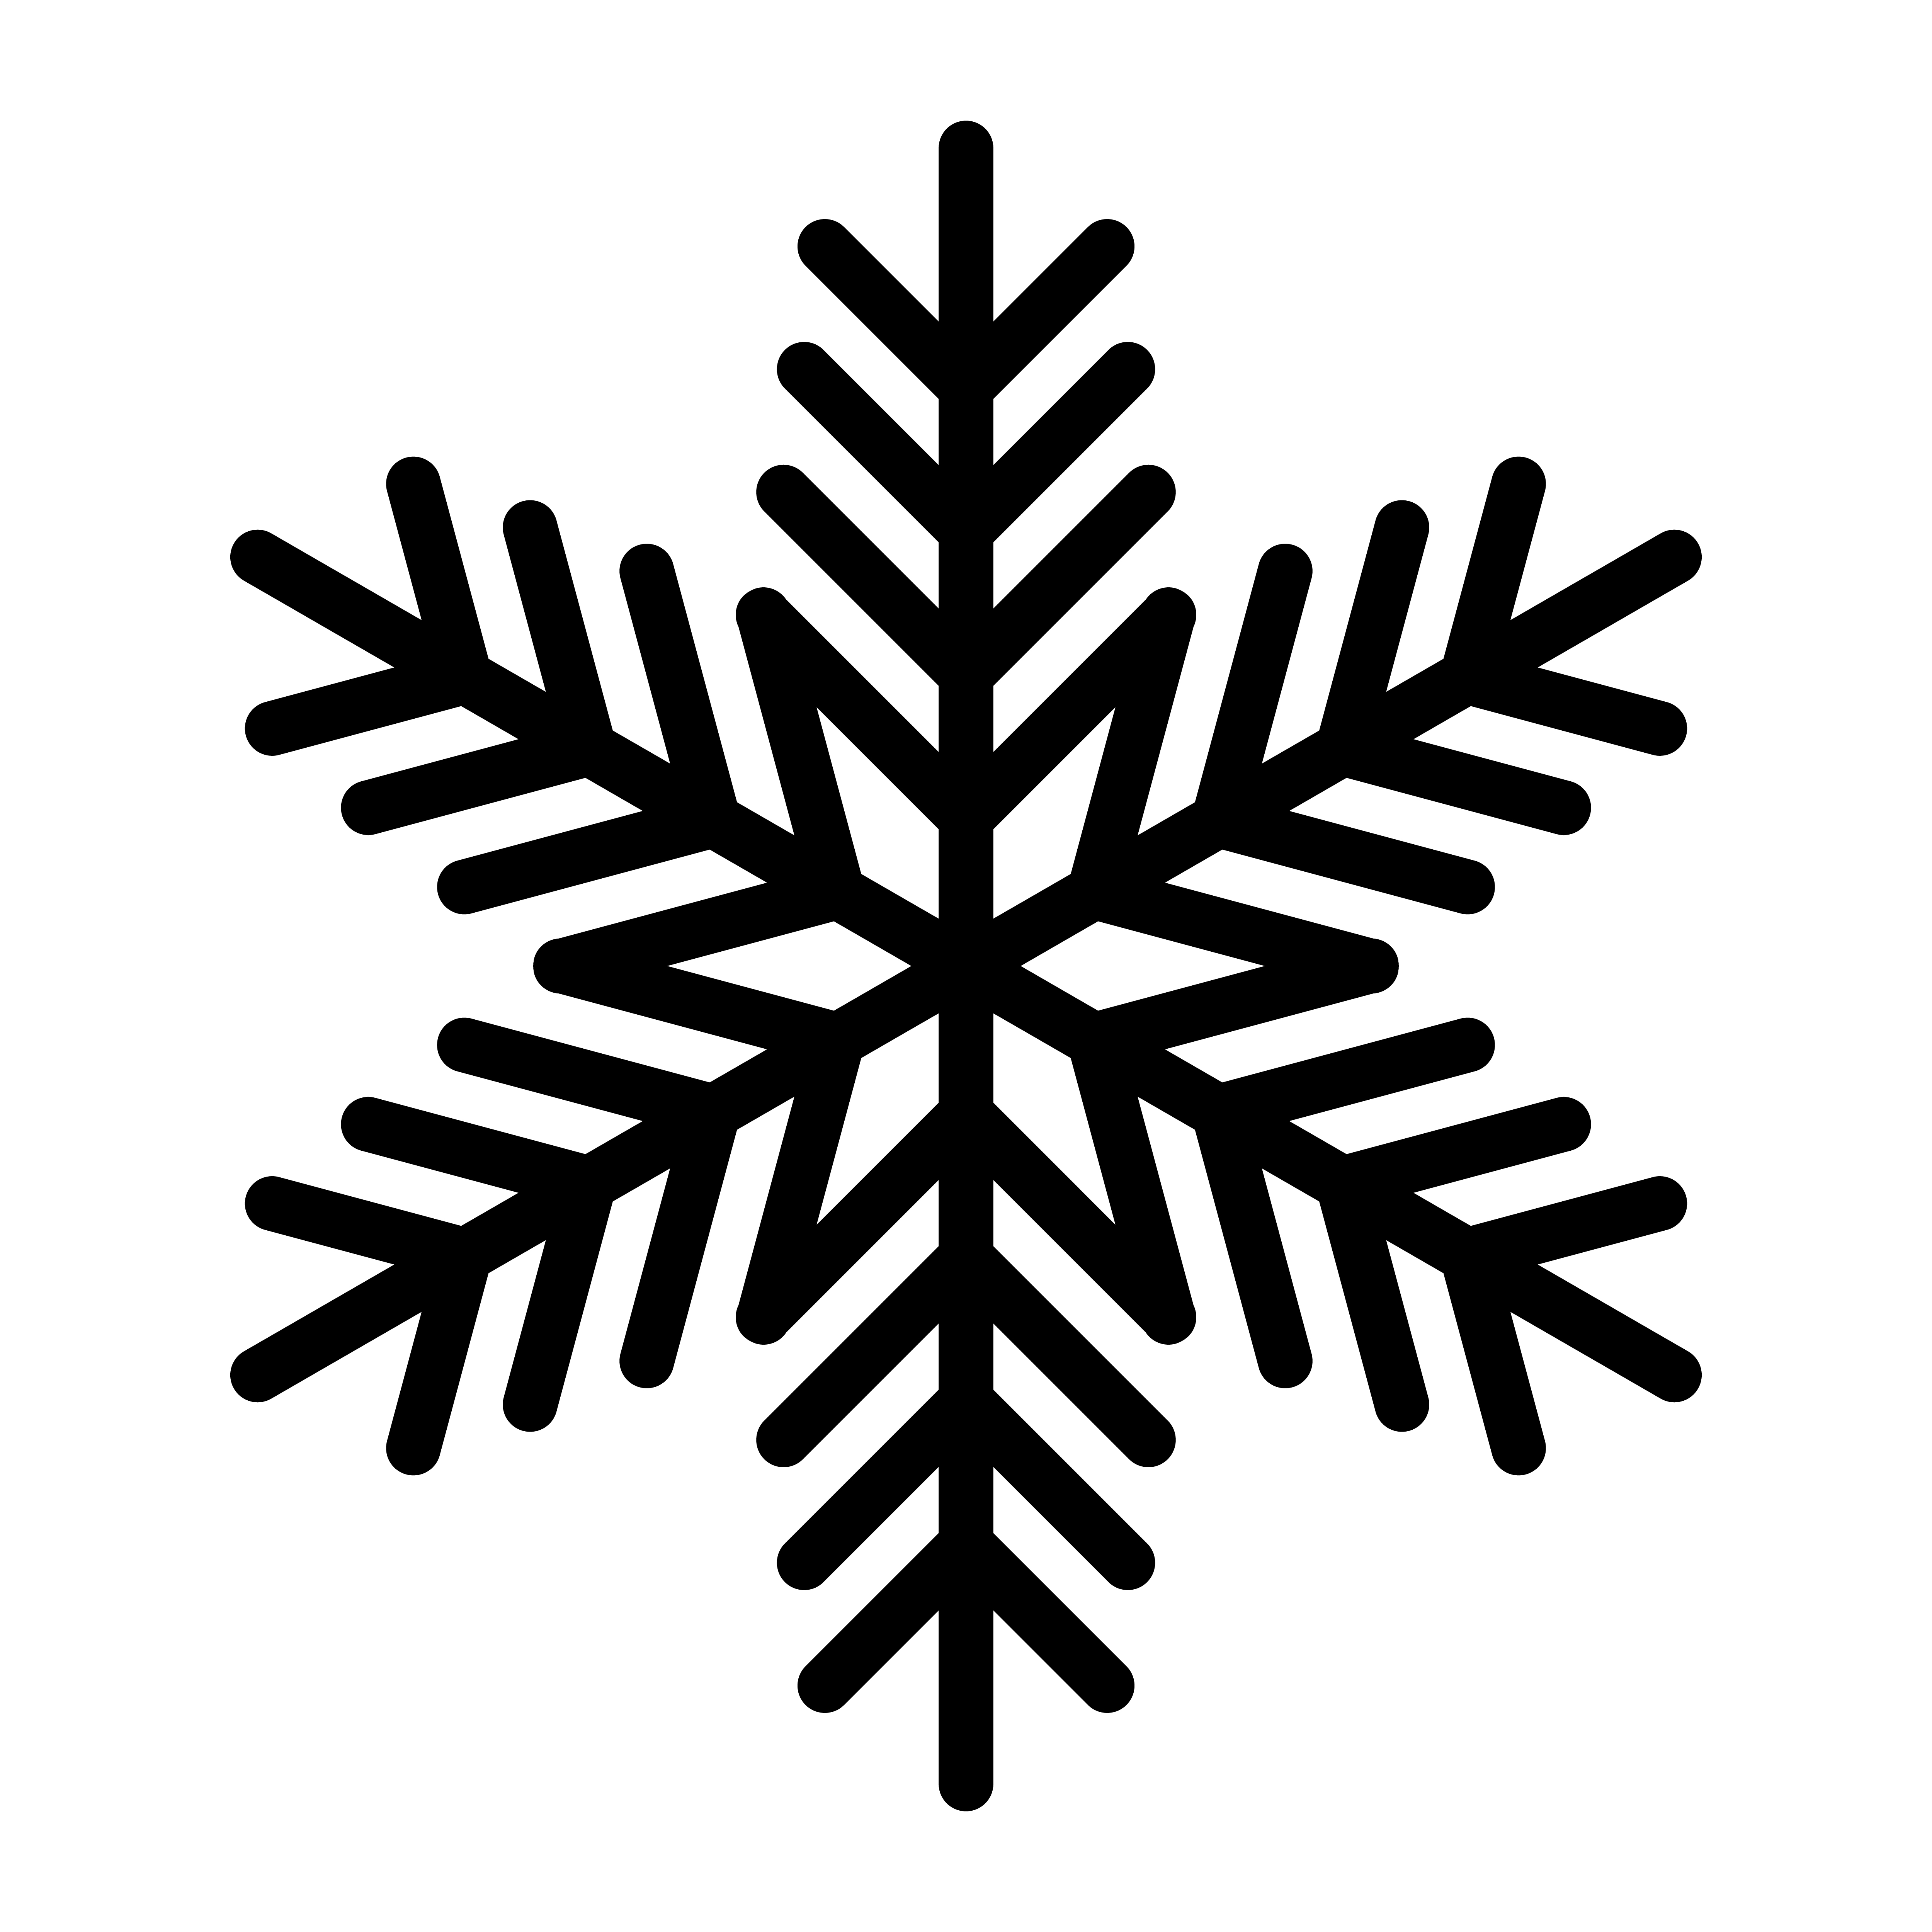 Download Snowflake Vector Icon 551314 - Download Free Vectors ...